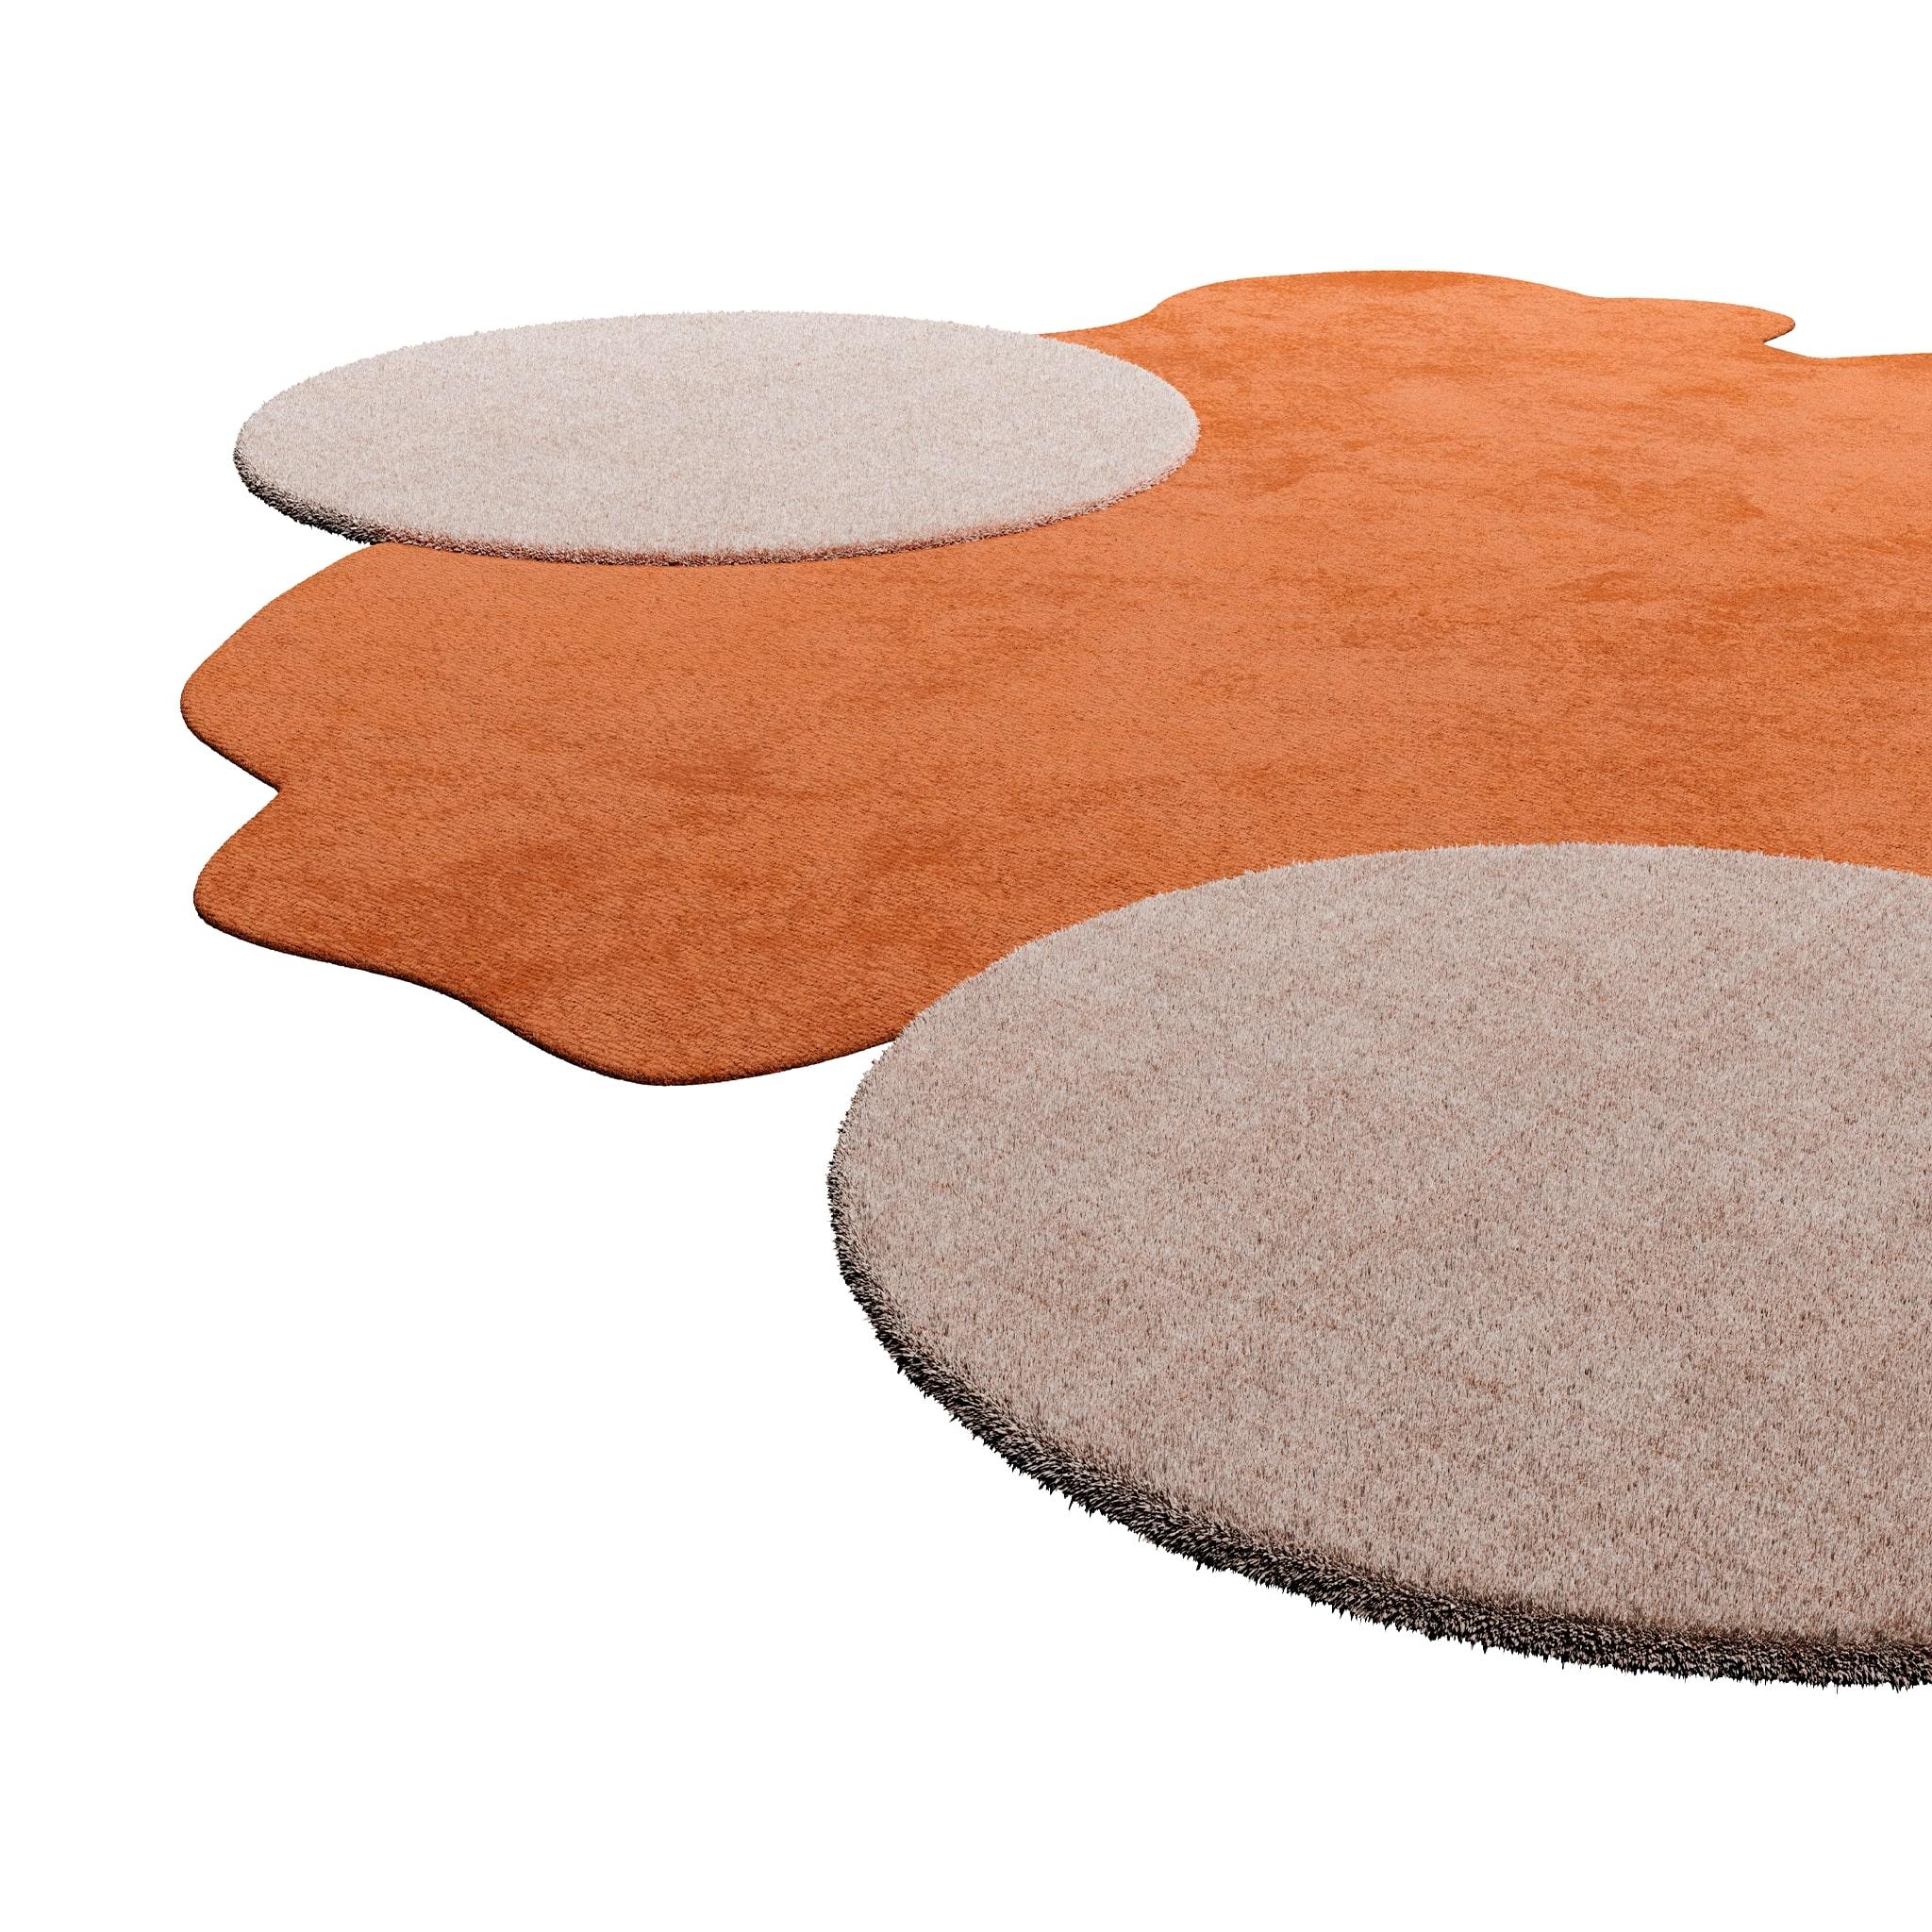 TAPIS Essential #008 est un tapis moderne qui rappelle les vibrations modernes du milieu du siècle mélangées au style de Memphis.
Avec une forme irrégulière et des couleurs neutres, le tapis ocre et crème juxtapose une forme organique et deux